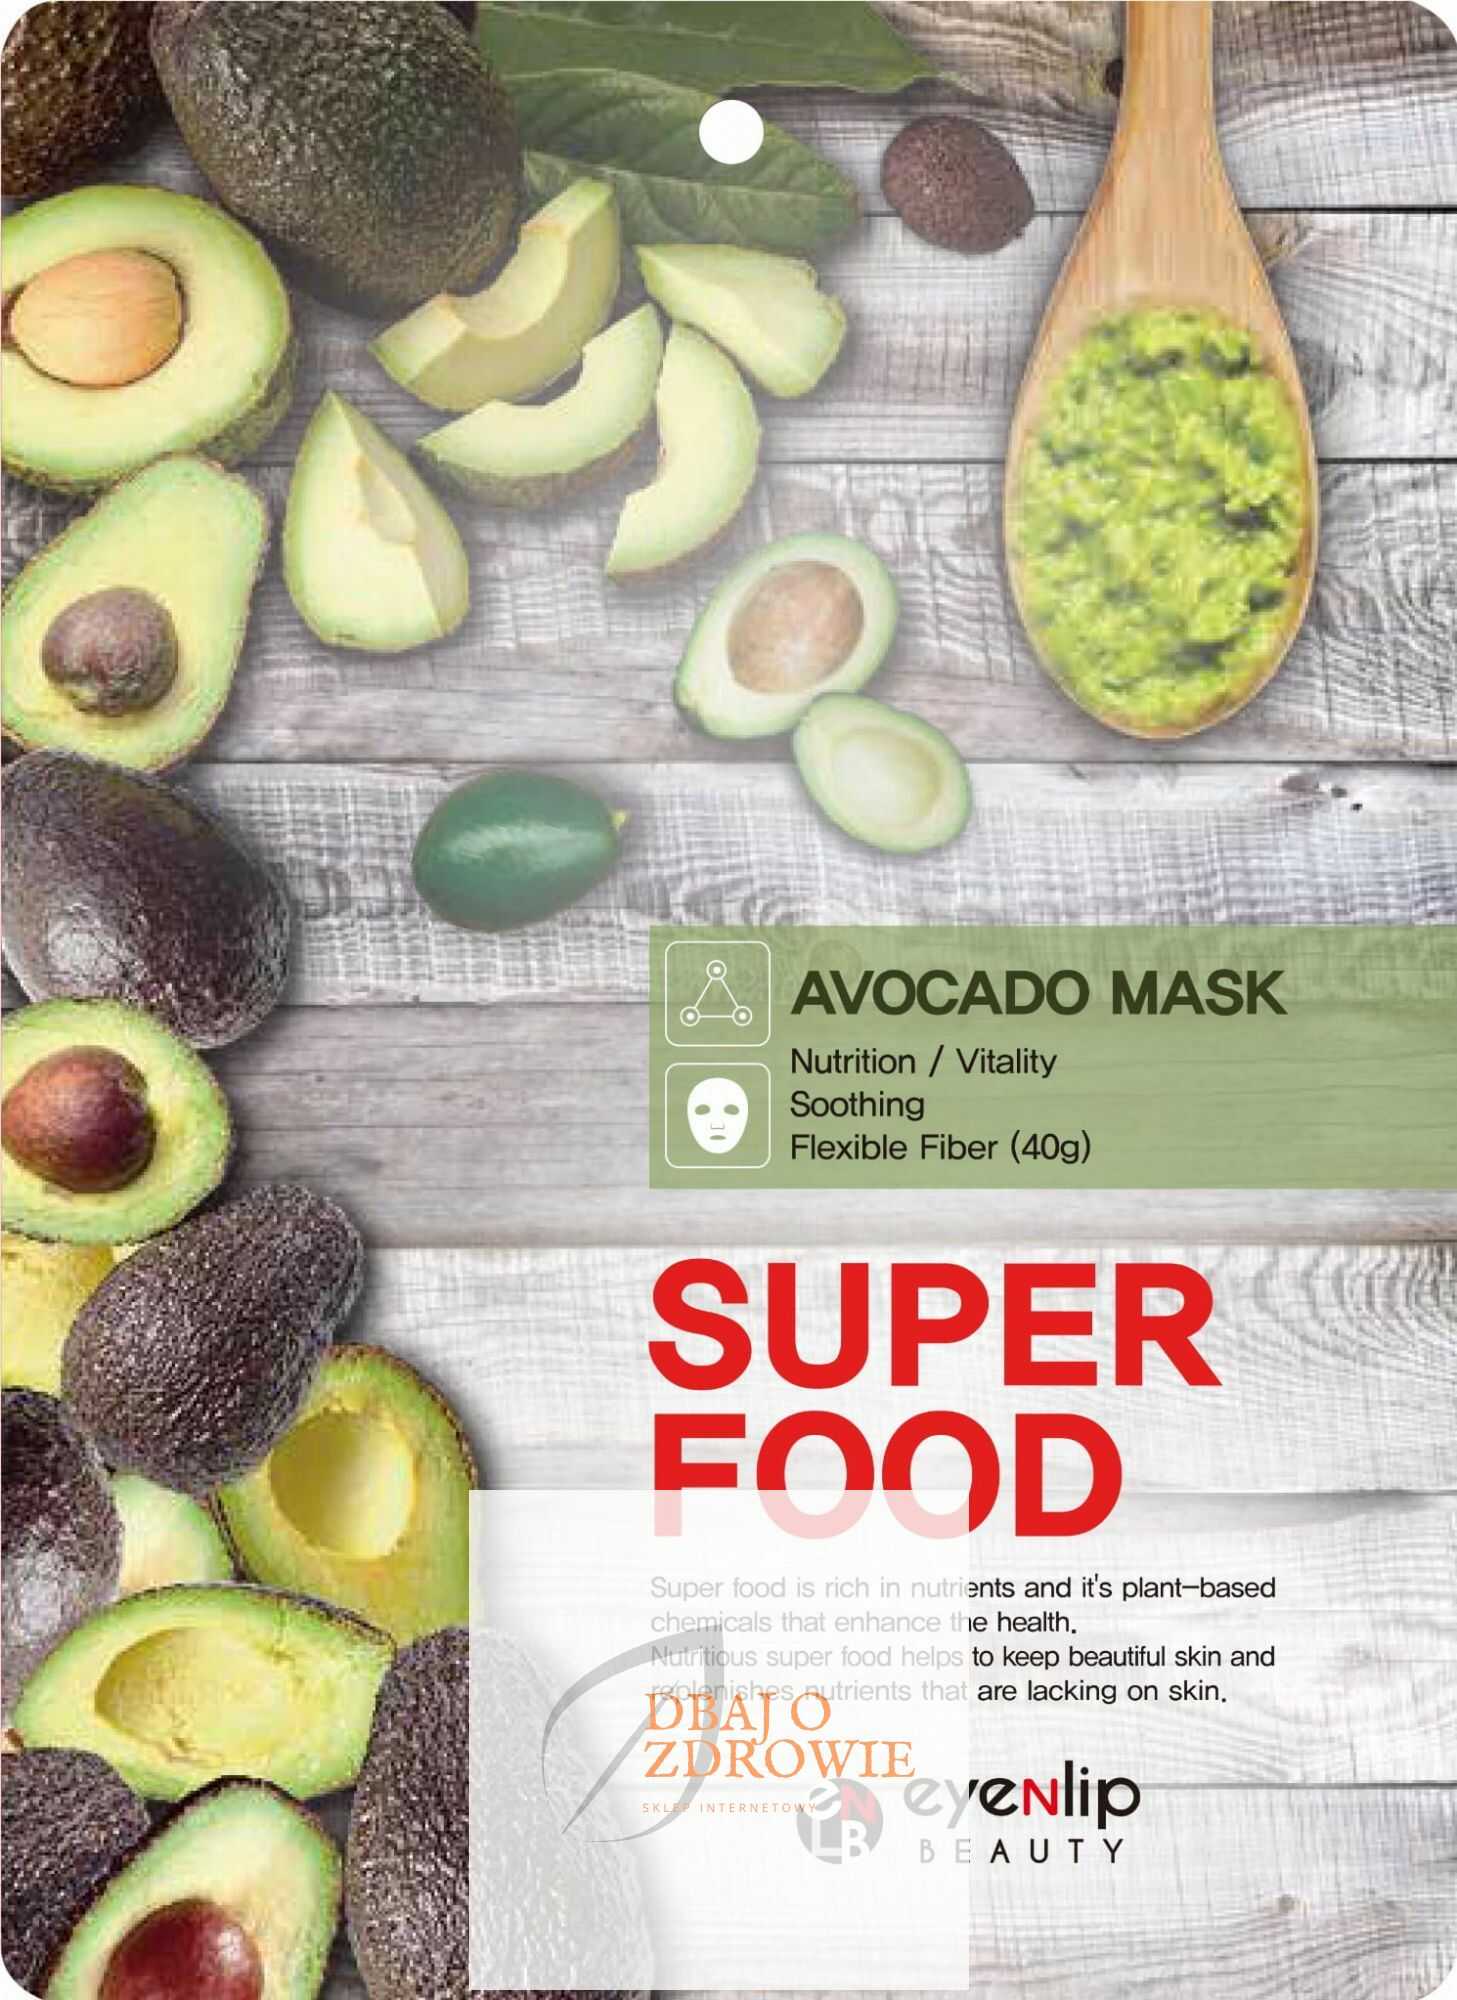 SuperFood Avocado odżywczo-łagodząca maska w płachcie, Eyenlip